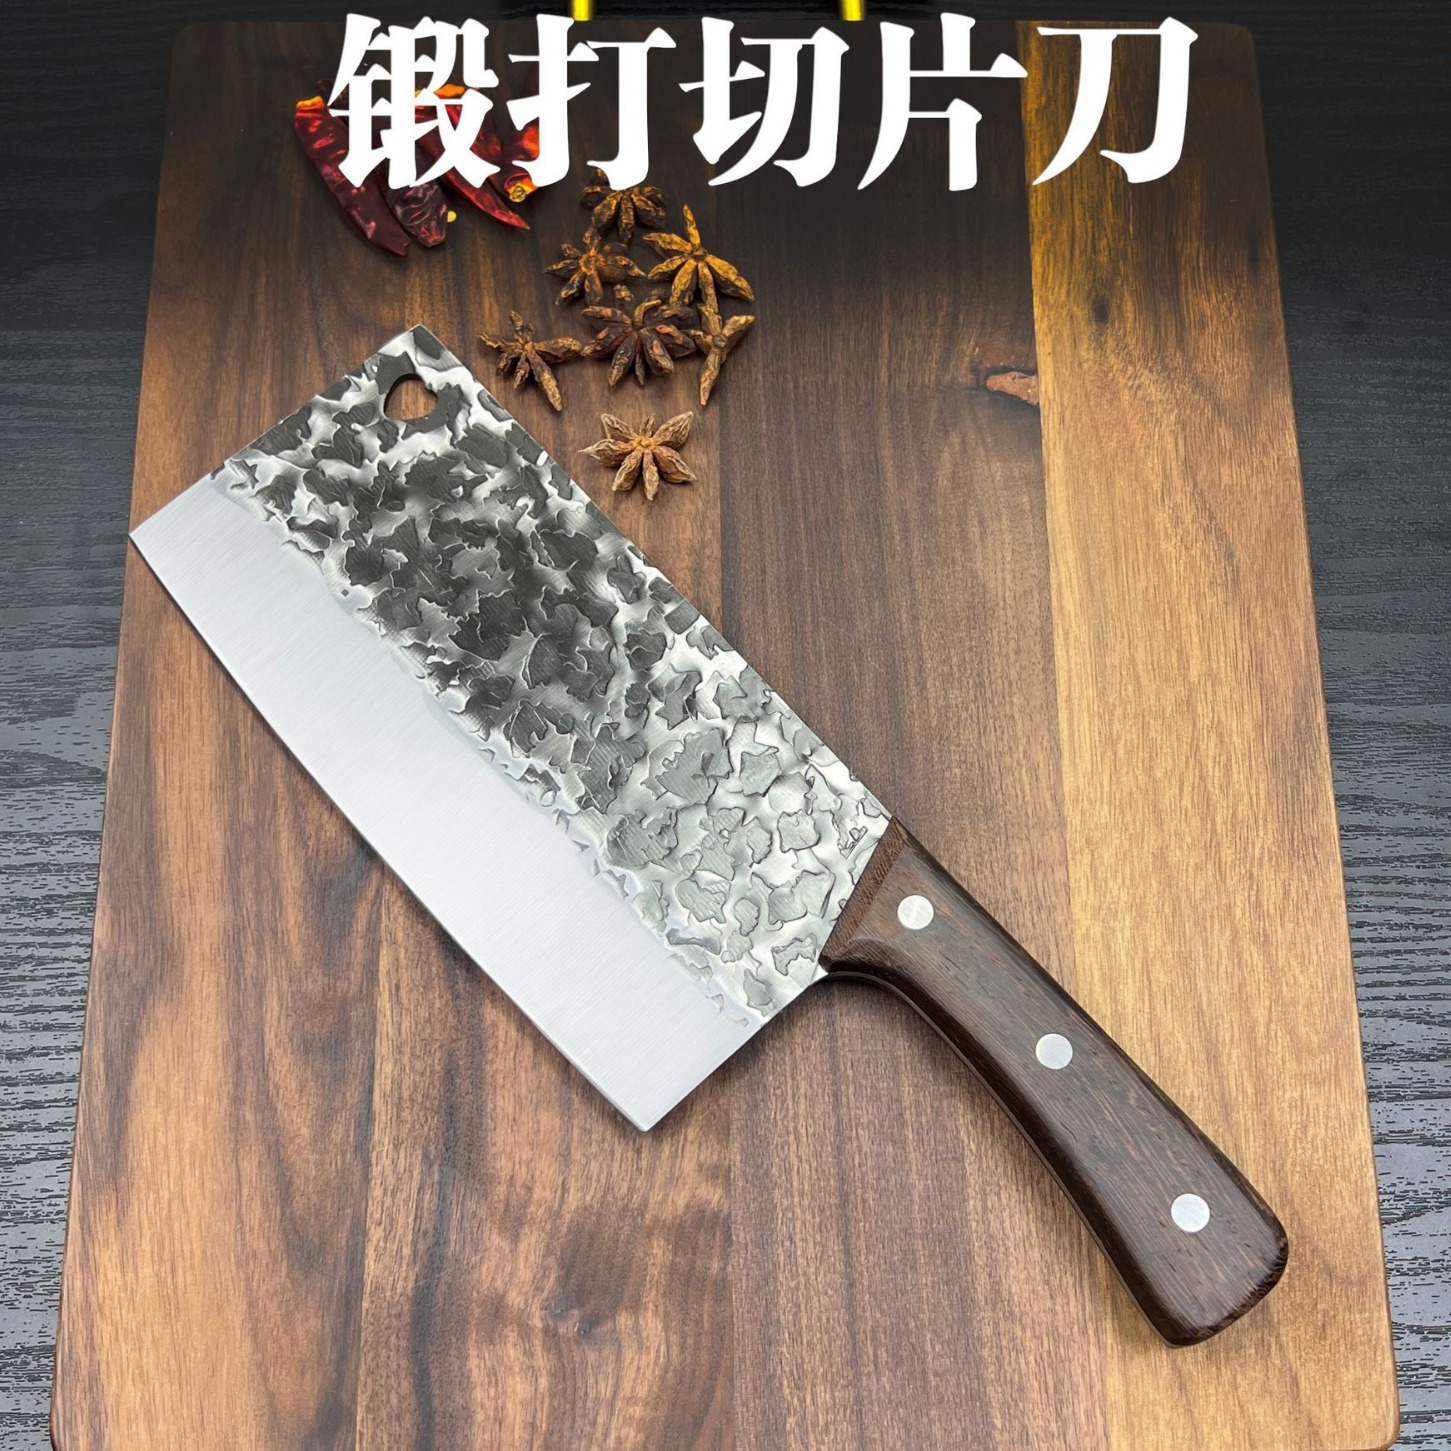 锻打菜刀切片刀鸡翅木刀柄切片切肉切水果蔬菜家用刀具厨房锋利刀